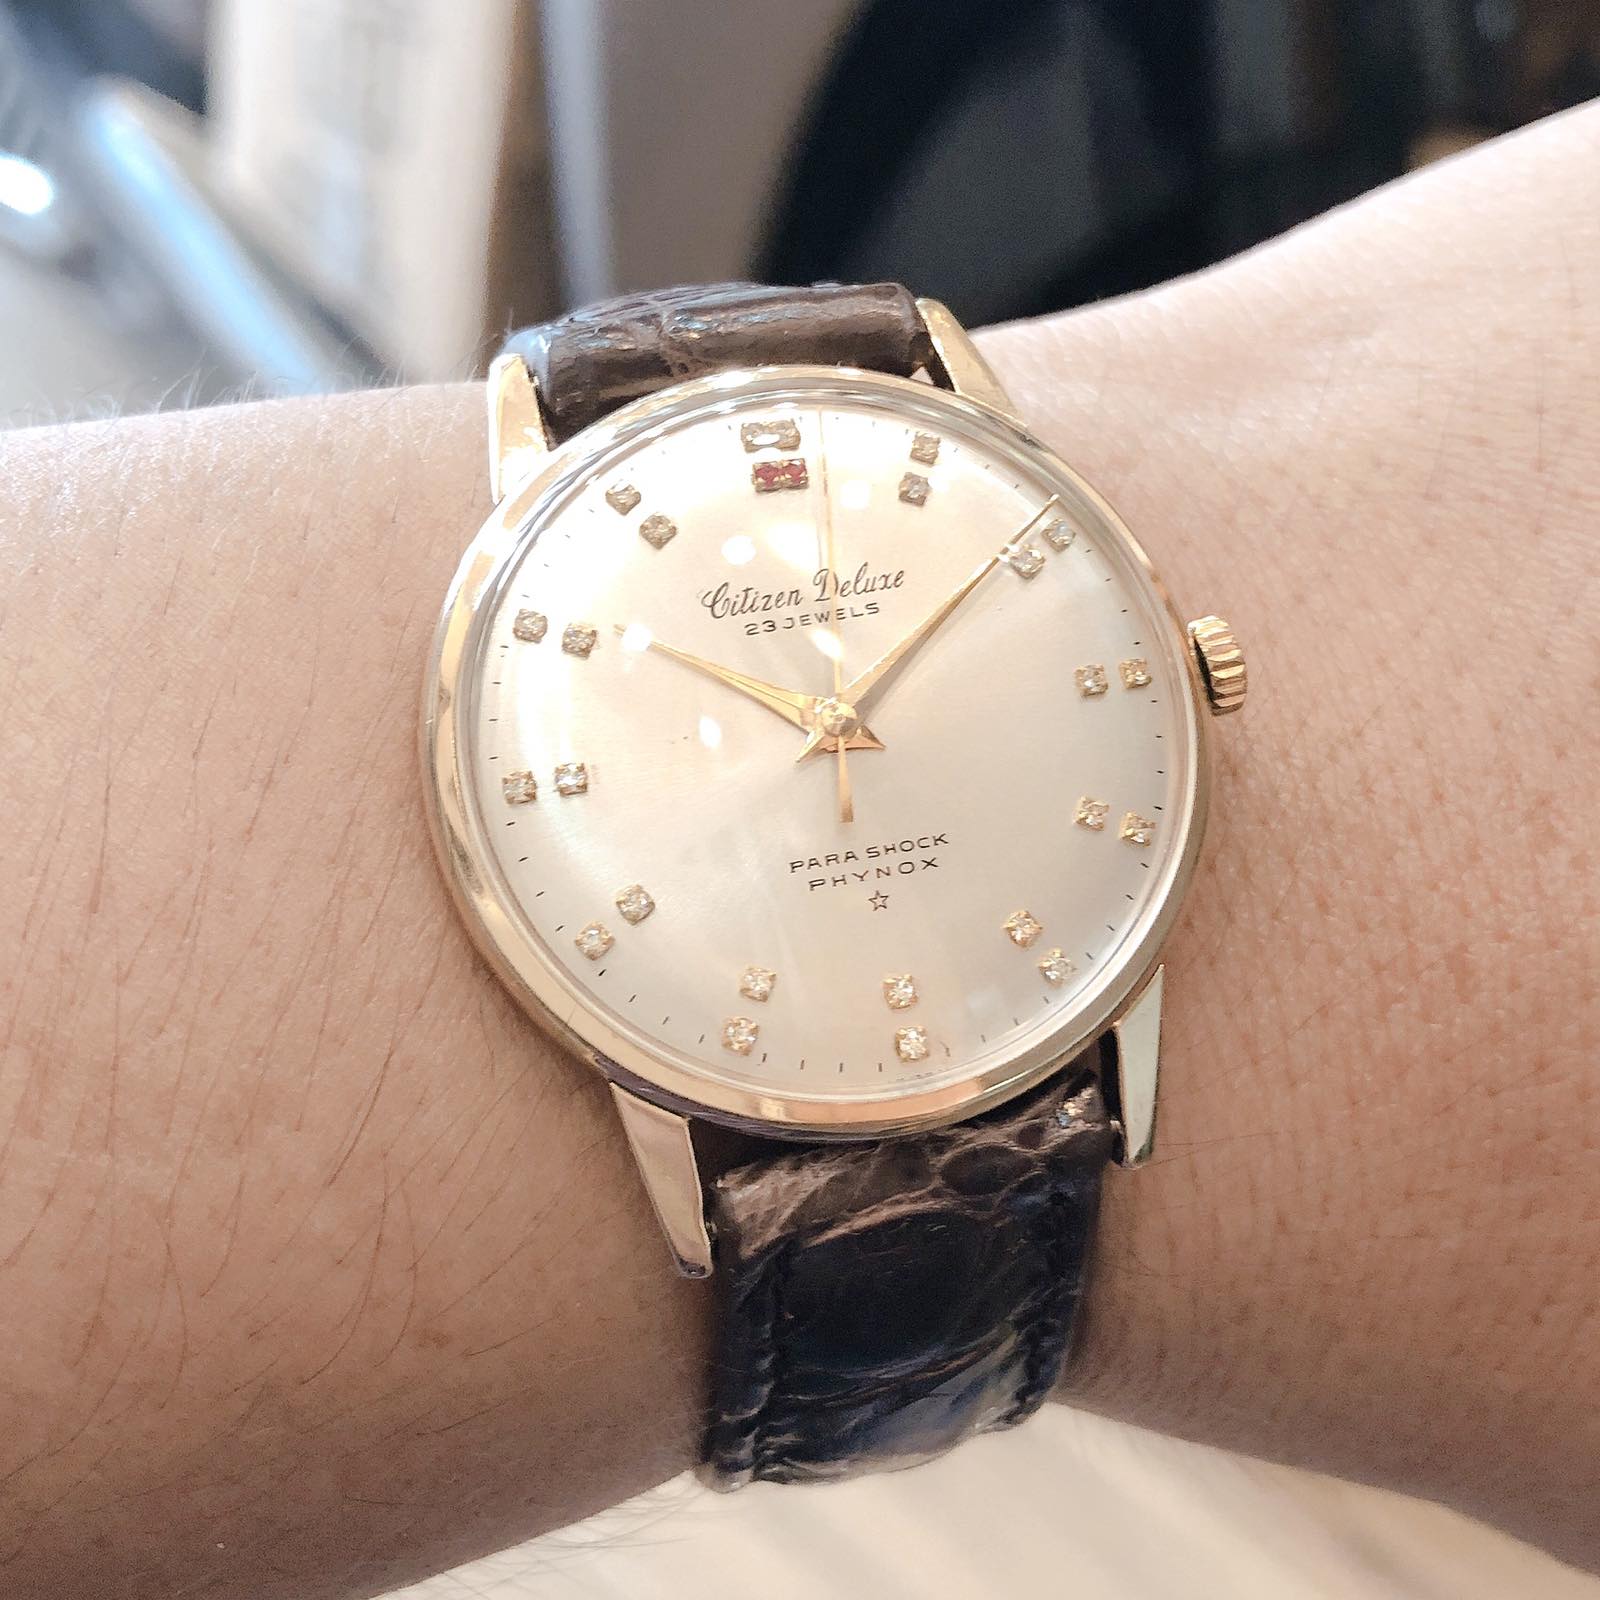 Đồng hồ cổ Citizen Deluxe lên dây 14k goldfilled chính hãng nhật bản